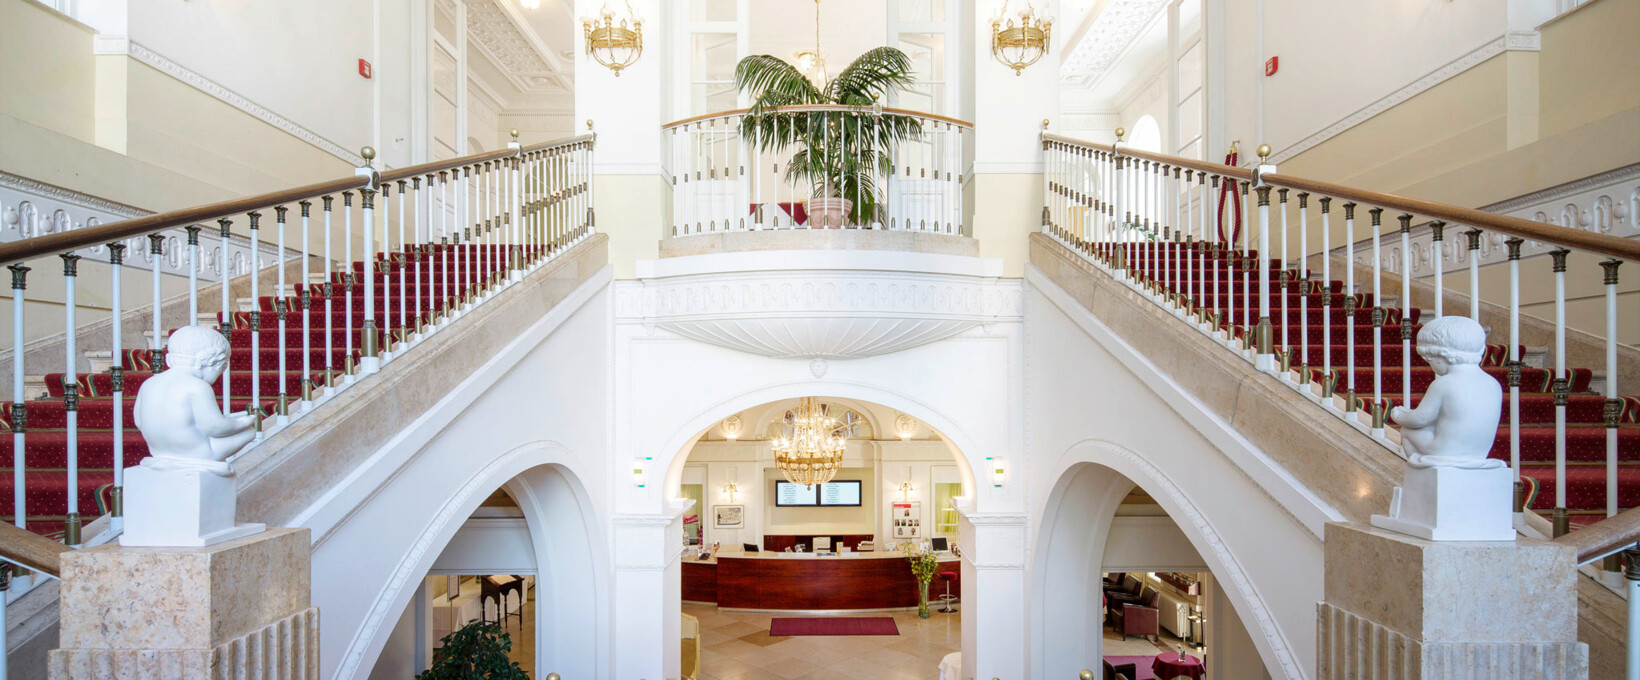 Σκάλα με χαλί |  Hotel Schloss WIlhelminenberg στη Βιέννη